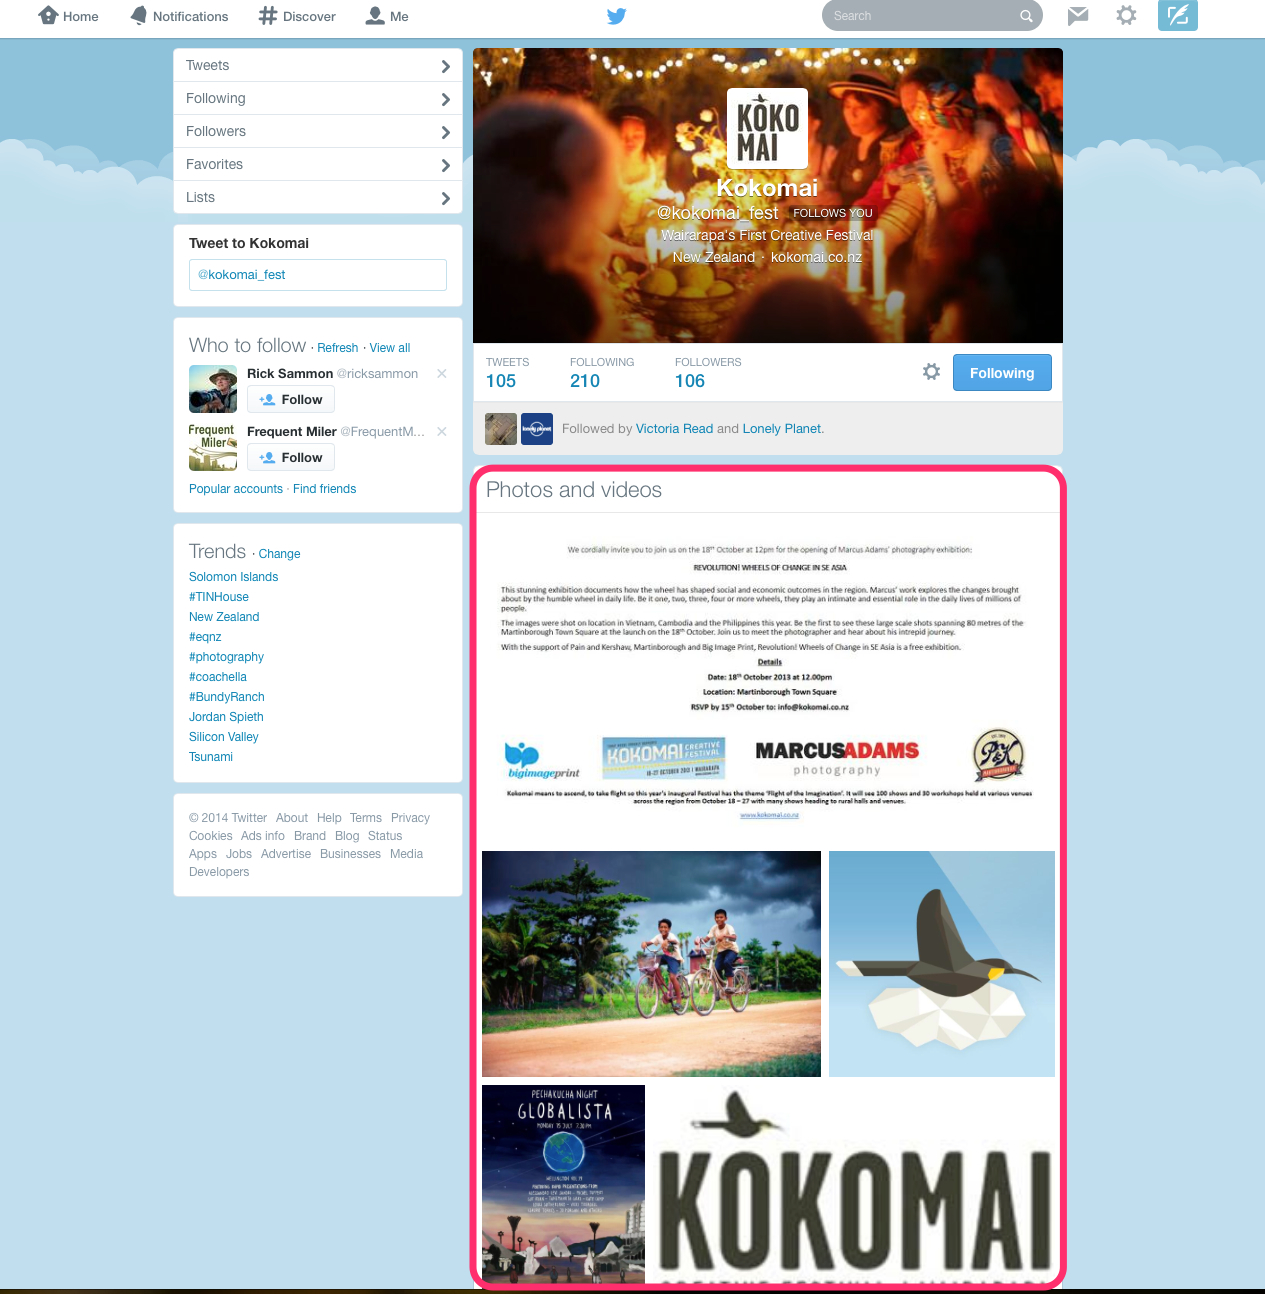 Kokomai__kokomai_fest__on_Twitter_and_Kokomai__kokomai_fest__on_Twitter_—_Inbox